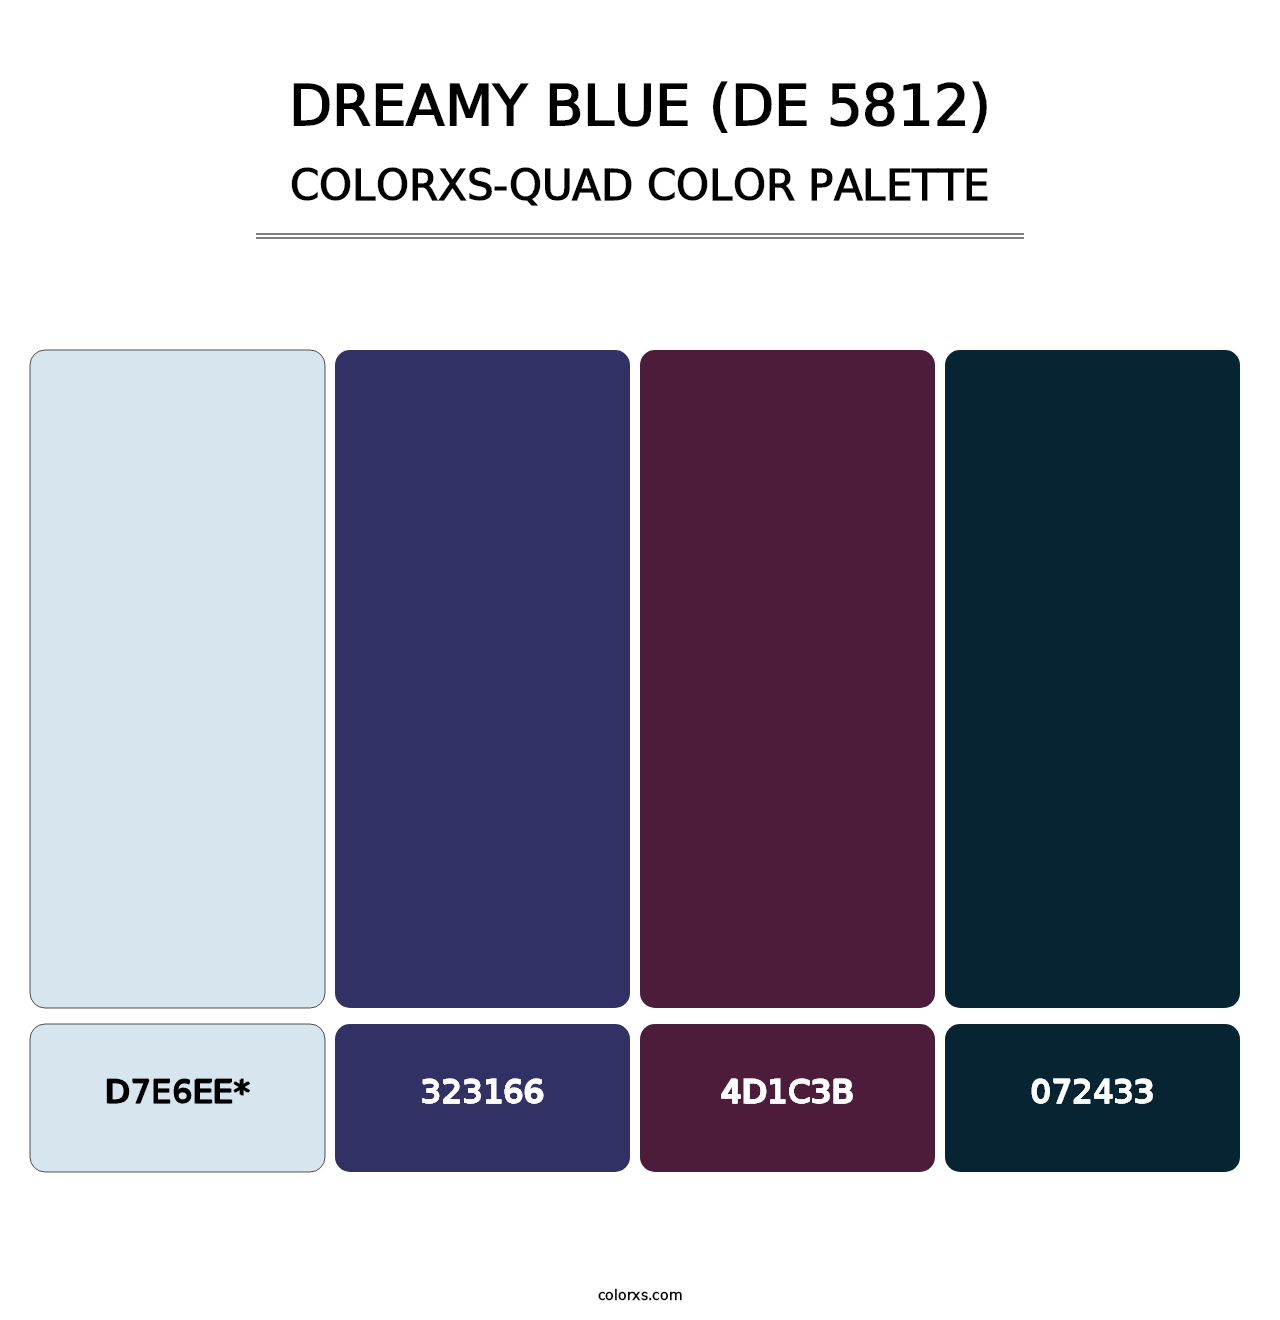 Dreamy Blue (DE 5812) - Colorxs Quad Palette